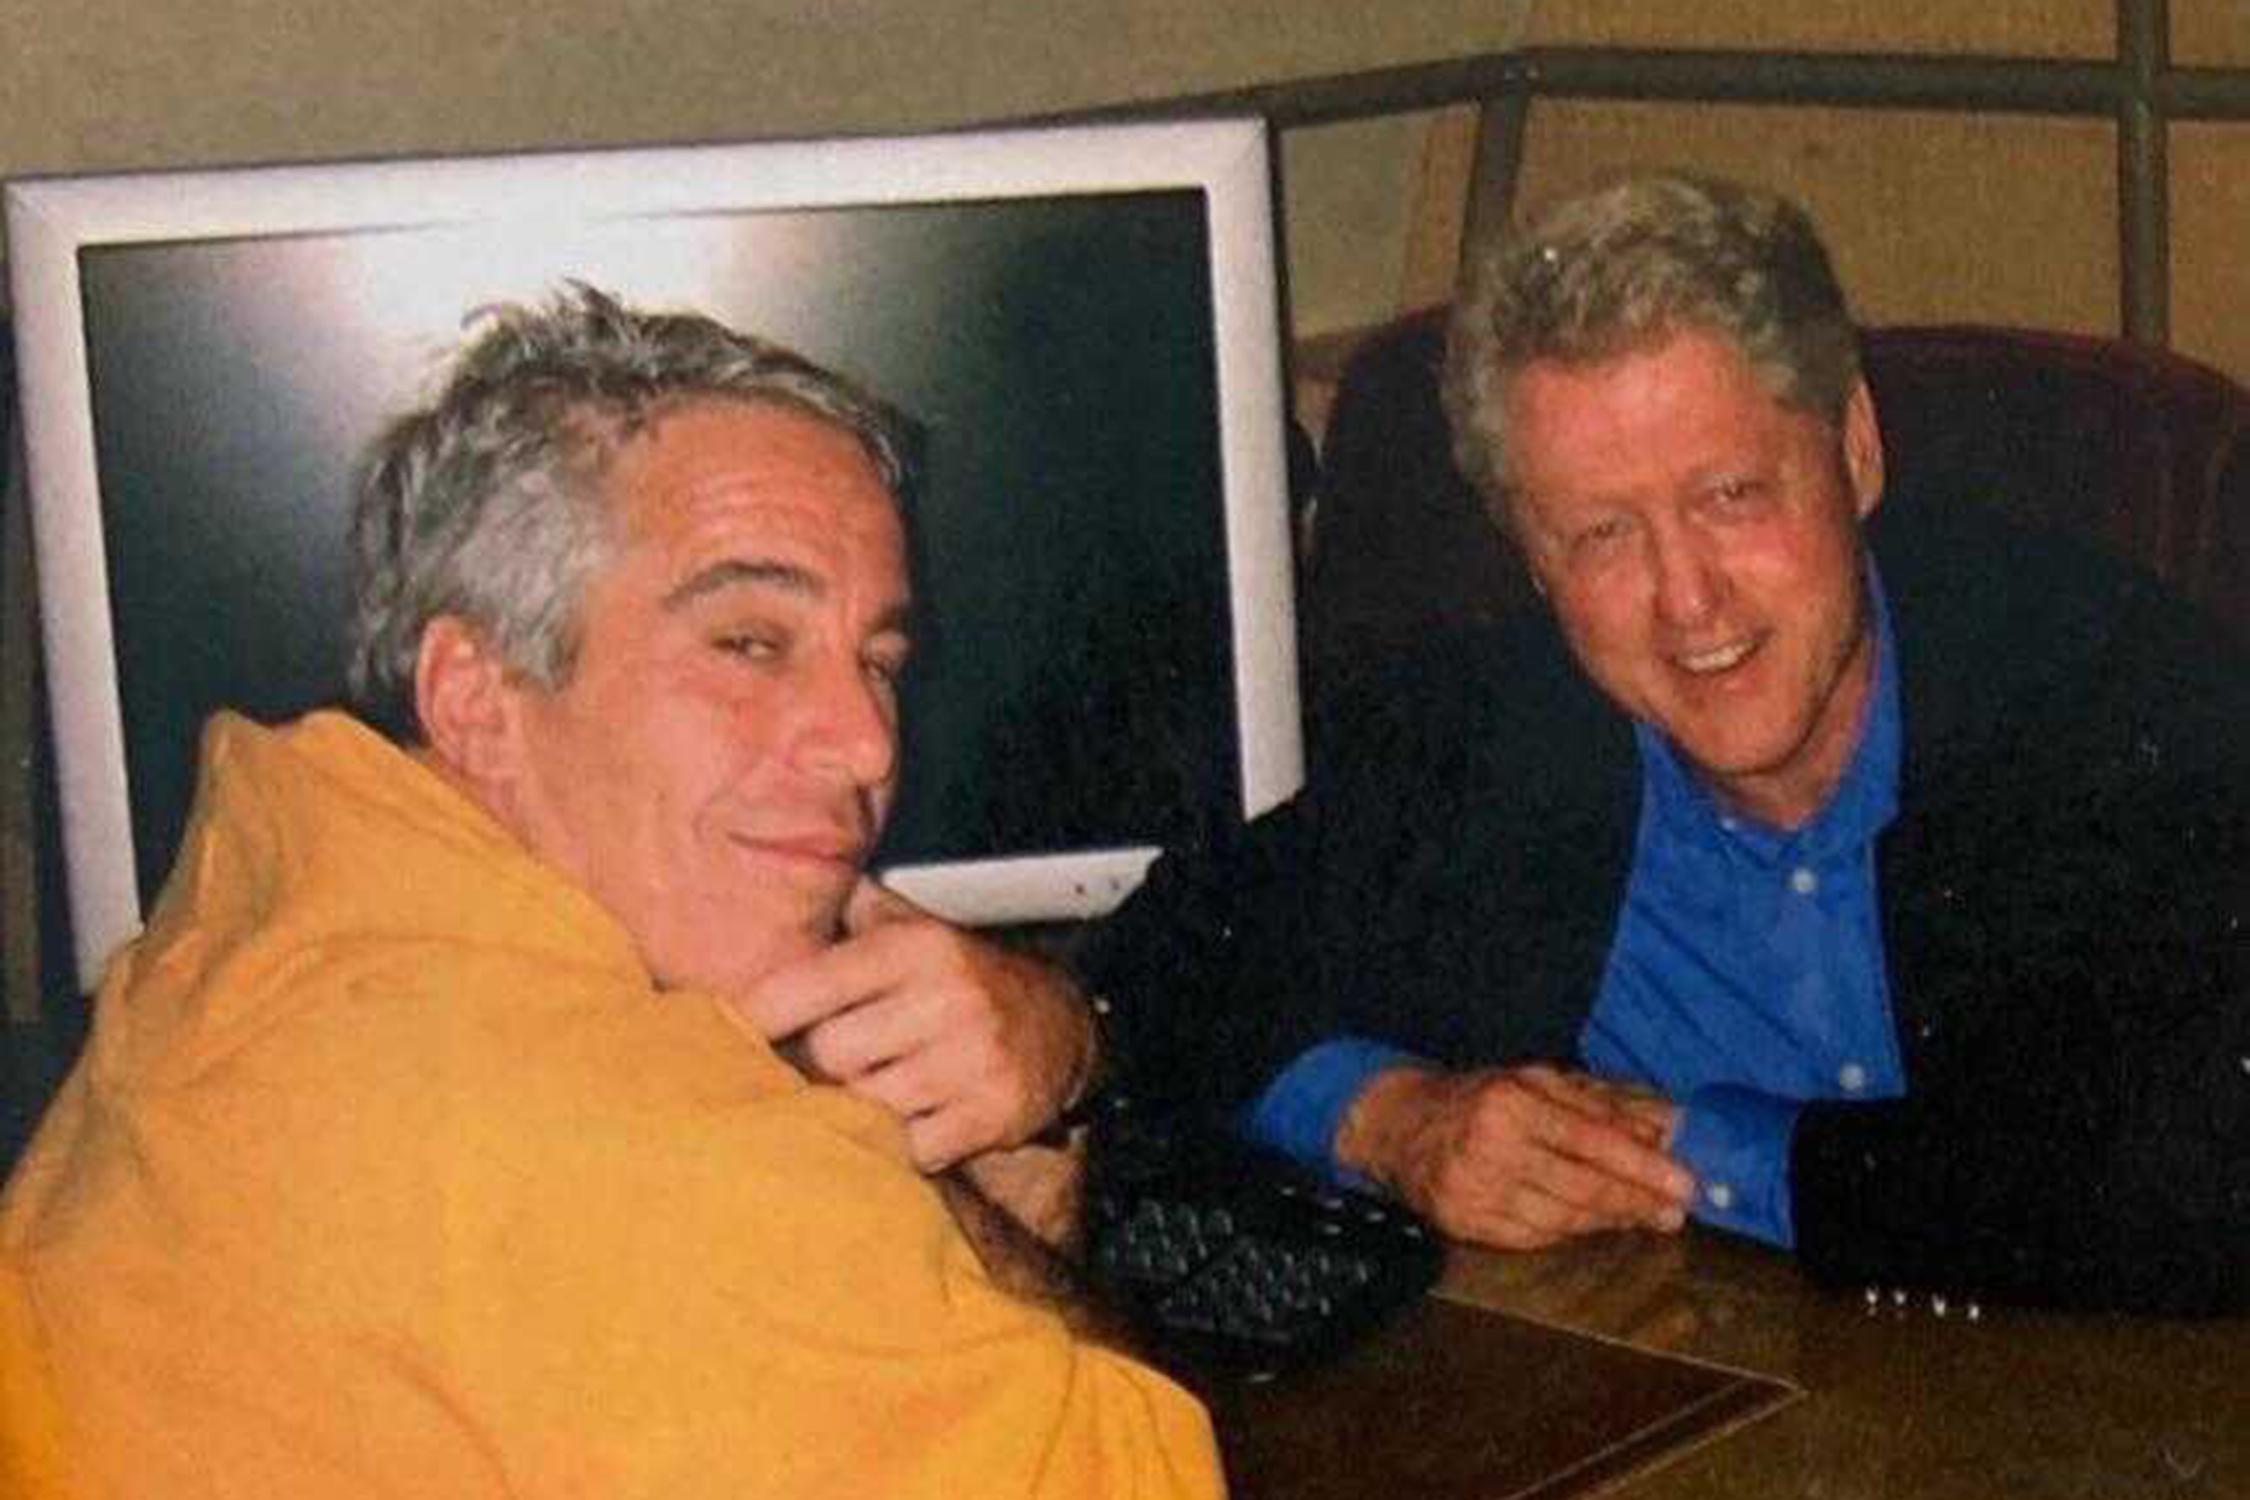  Donald Trump ve Bill Clinton'ın Jeffrey Epstein'da kasetleri olduğu iddia edildi.